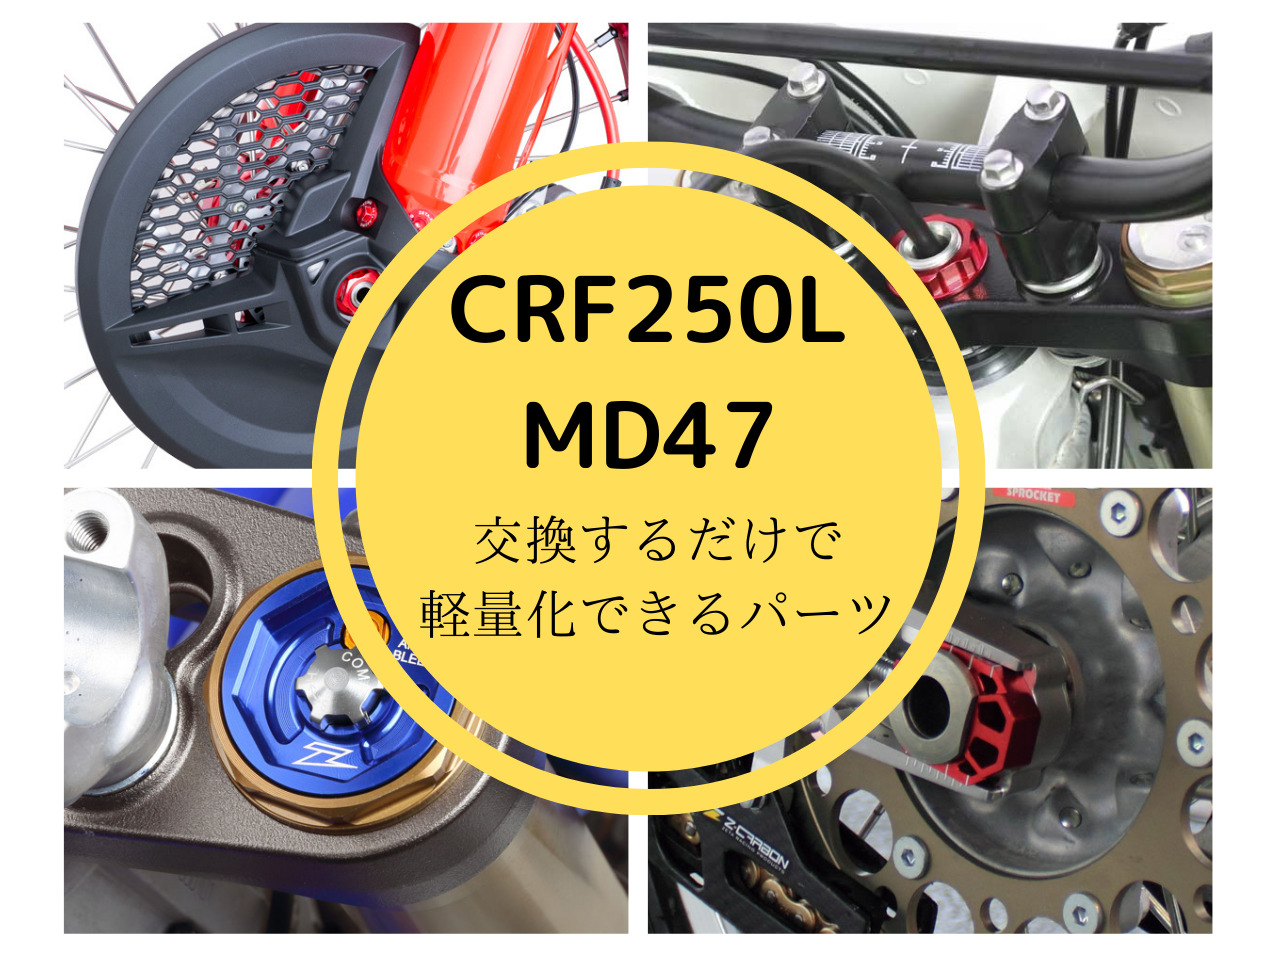 CRF250L(MD47)交換するだけで軽量化できるパーツの写真